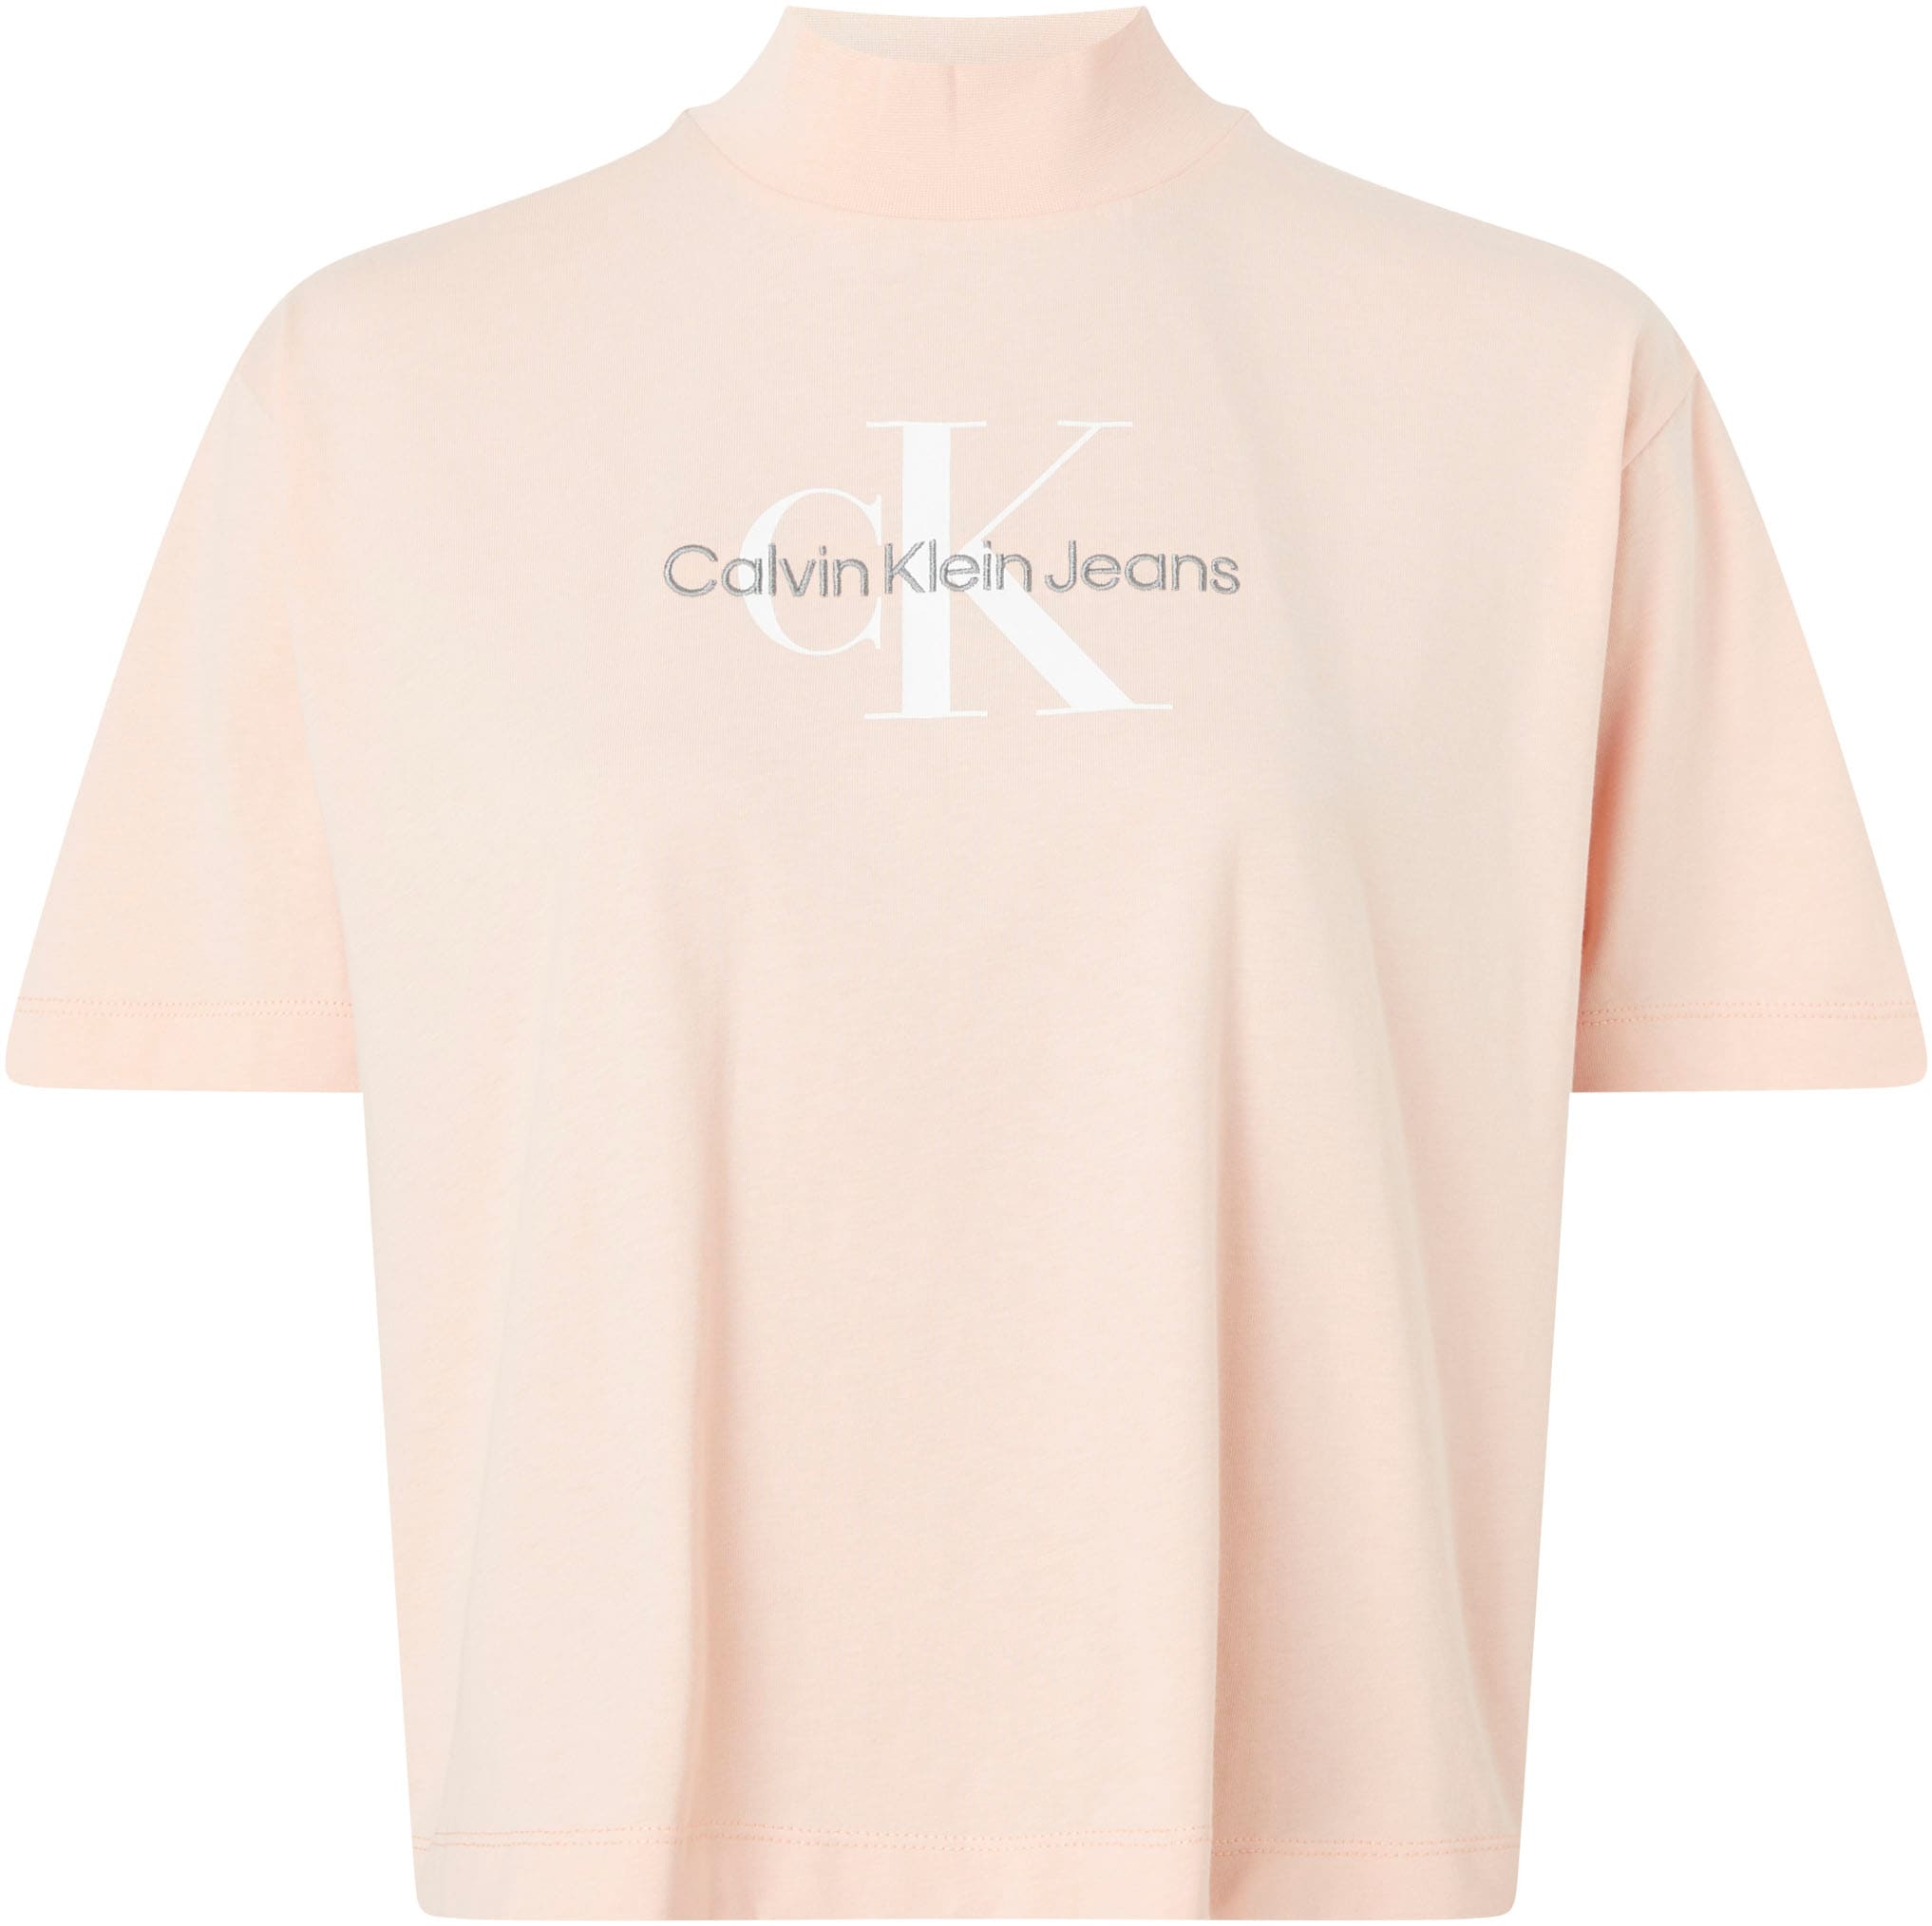 Calvin Klein Jeans kaufen »ARCHIVAL TEE« online T-Shirt MONOLOGO